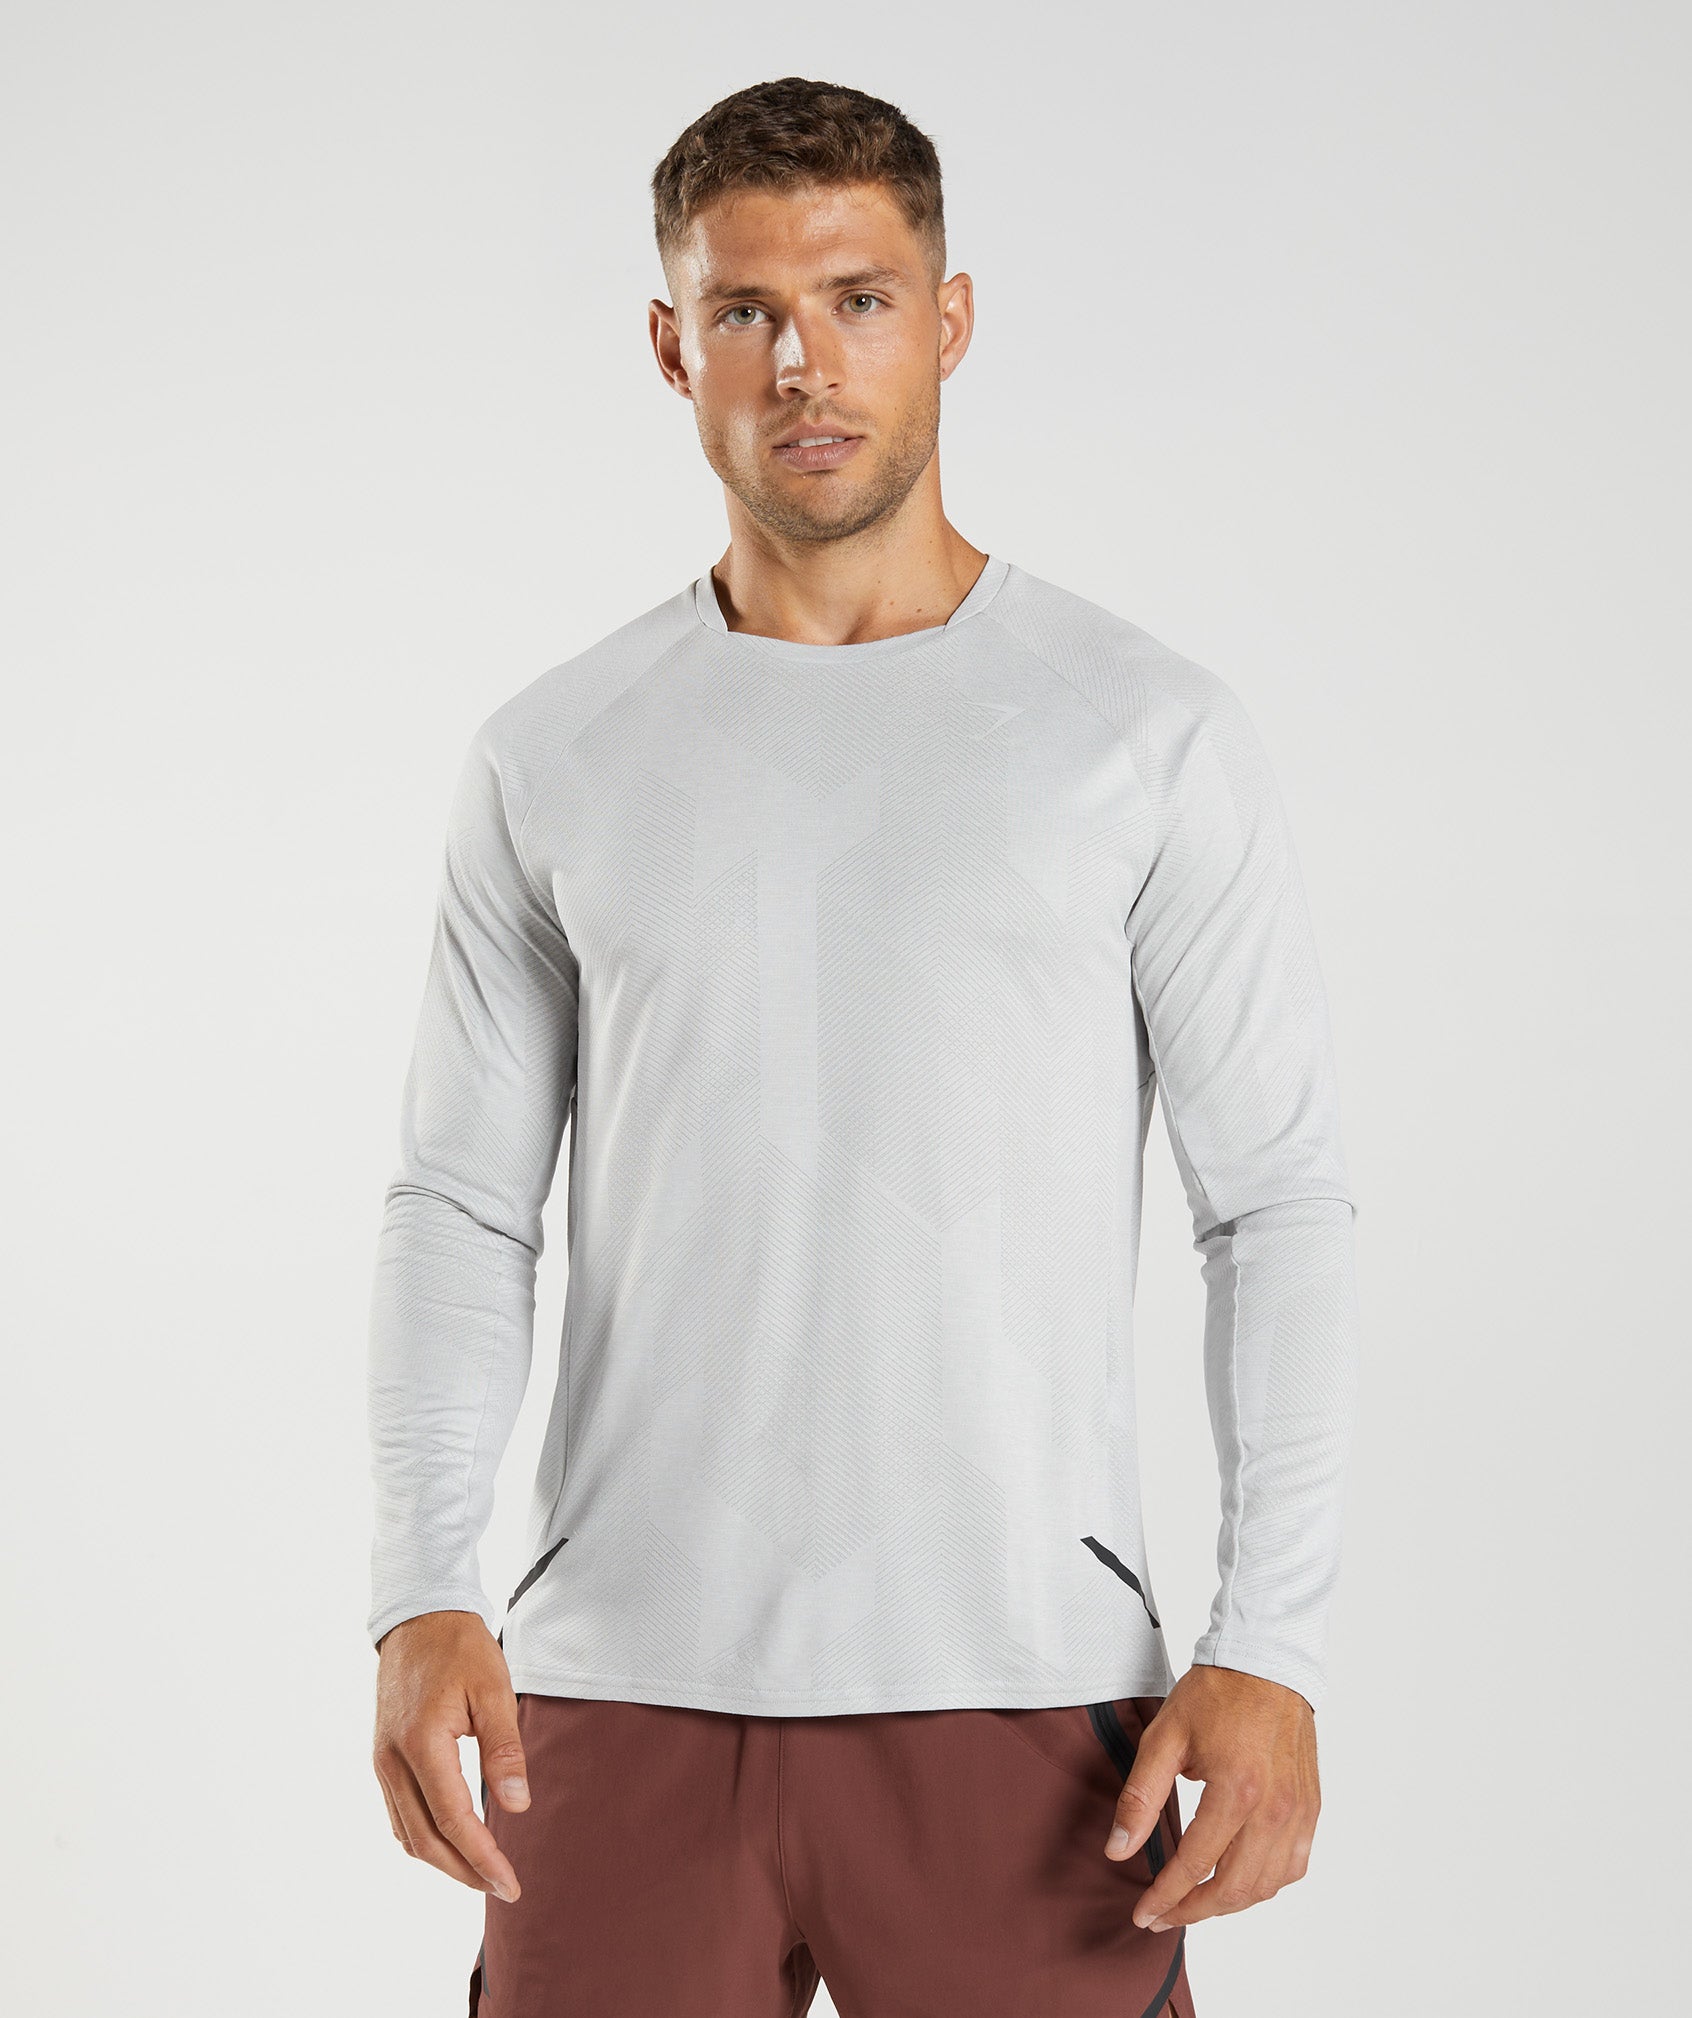 Gymshark Apex Long Sleeve T-Shirt - Light Grey/White